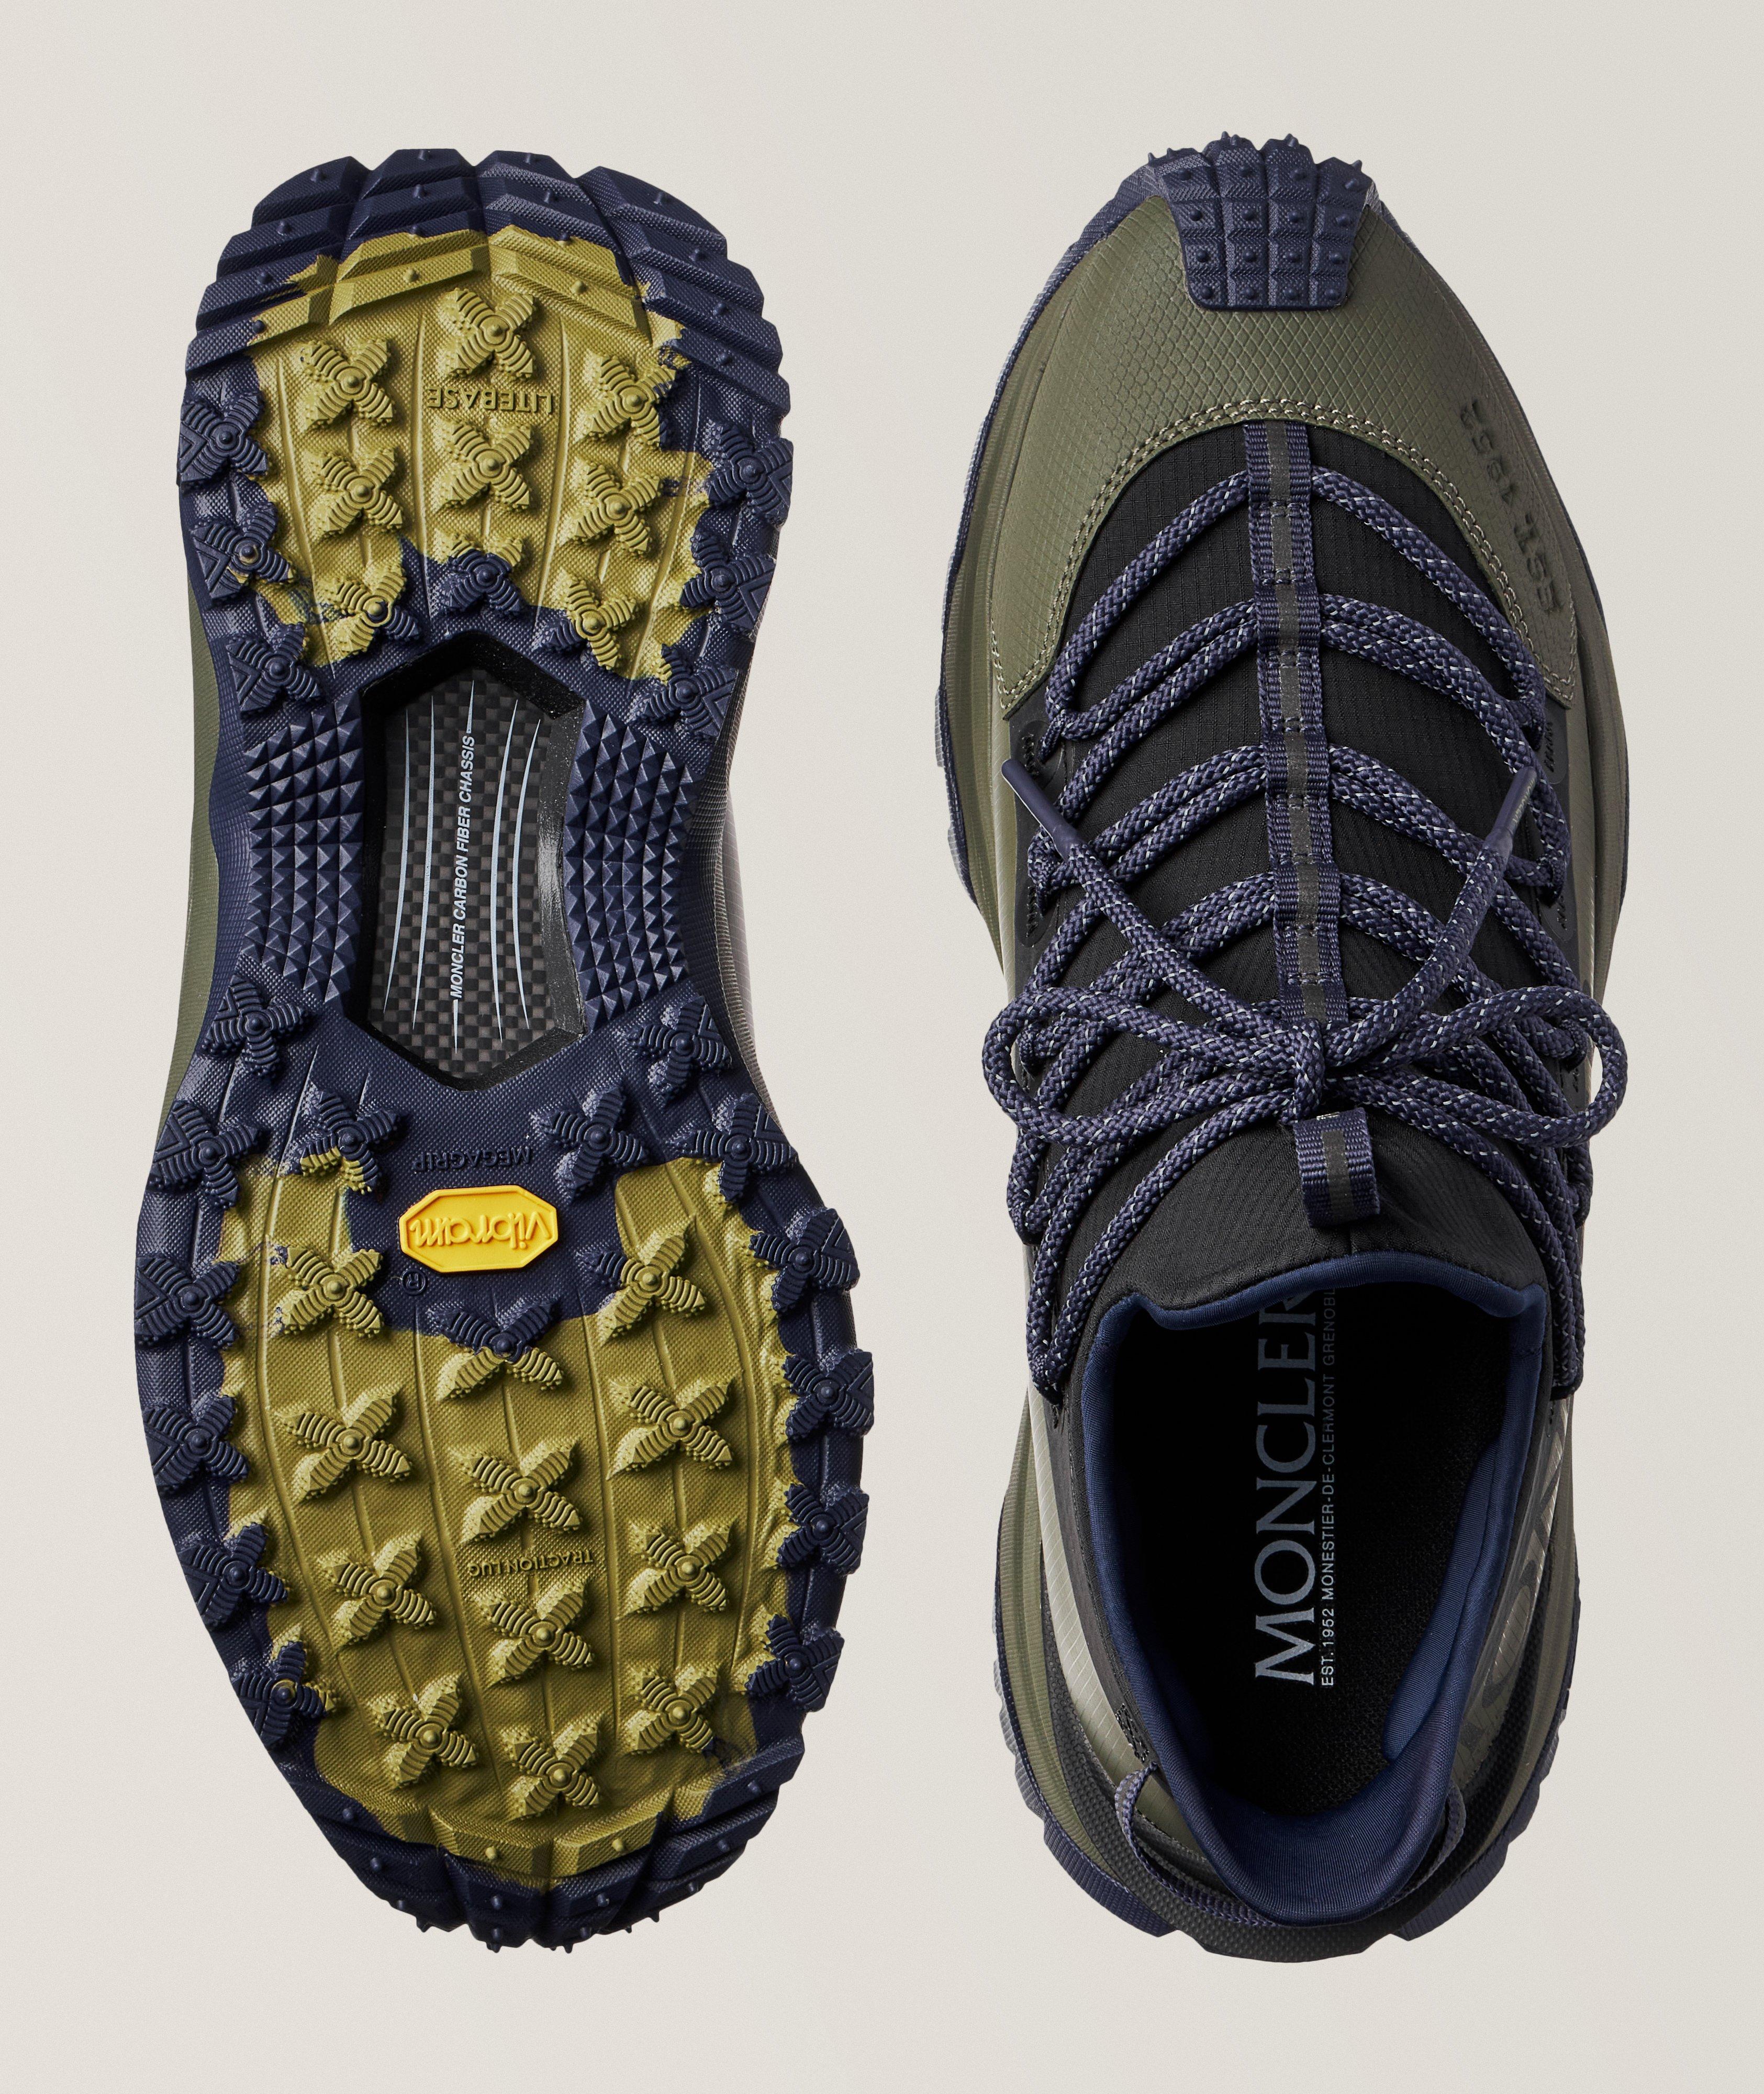 Chaussure sport Trailgrip Lite 2 aux textures variées image 2